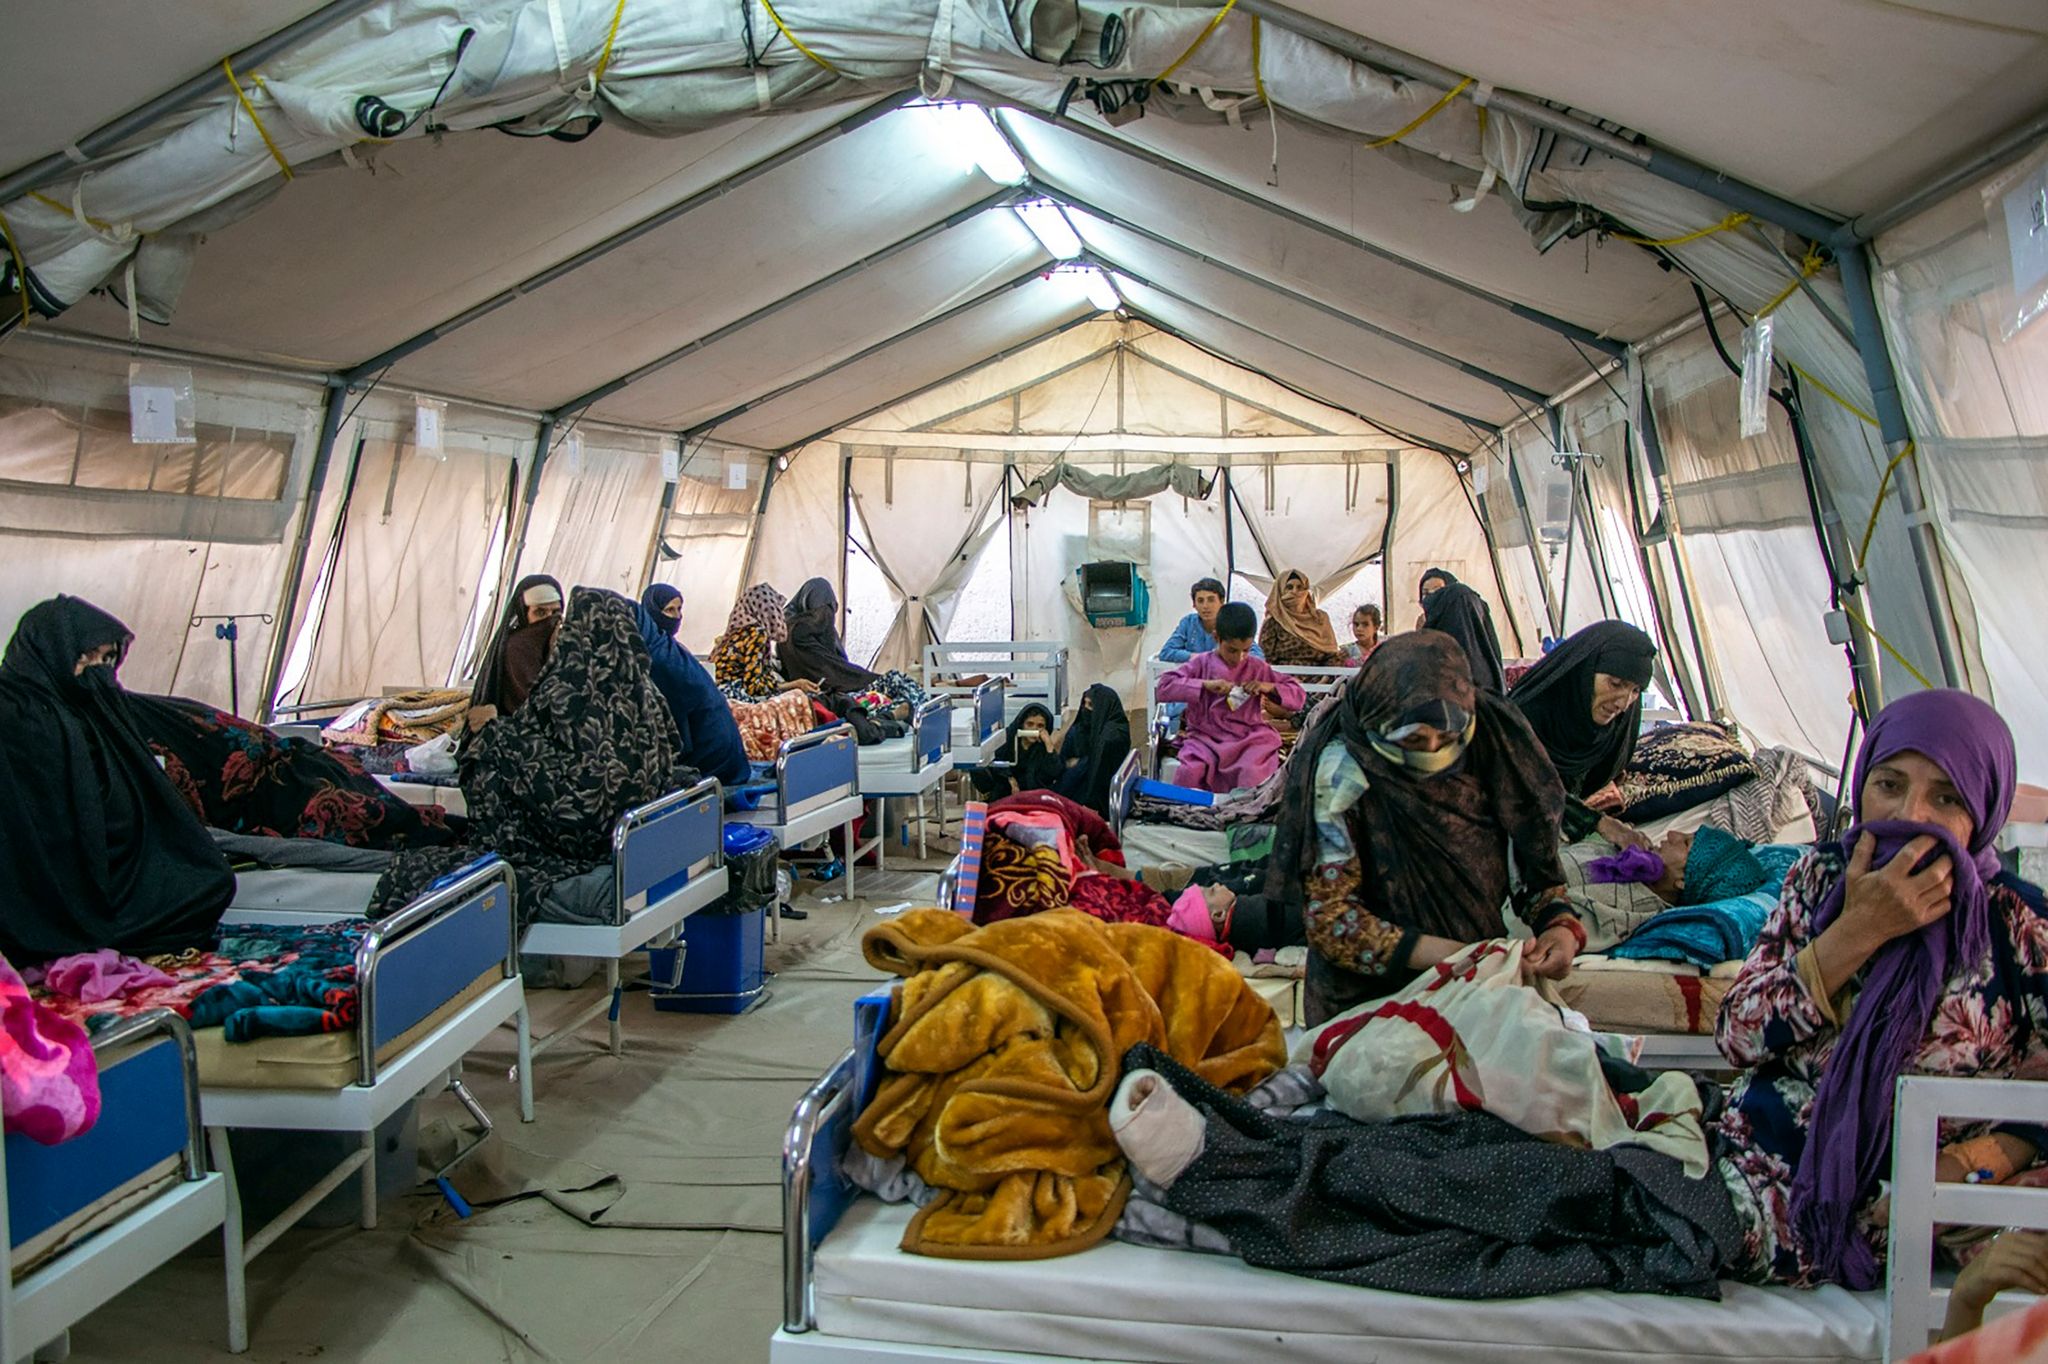 Verletzte werden nach starken Erdbeben in der Provinz Herat im Westen Afghanistans in einem Zelt behandelt.